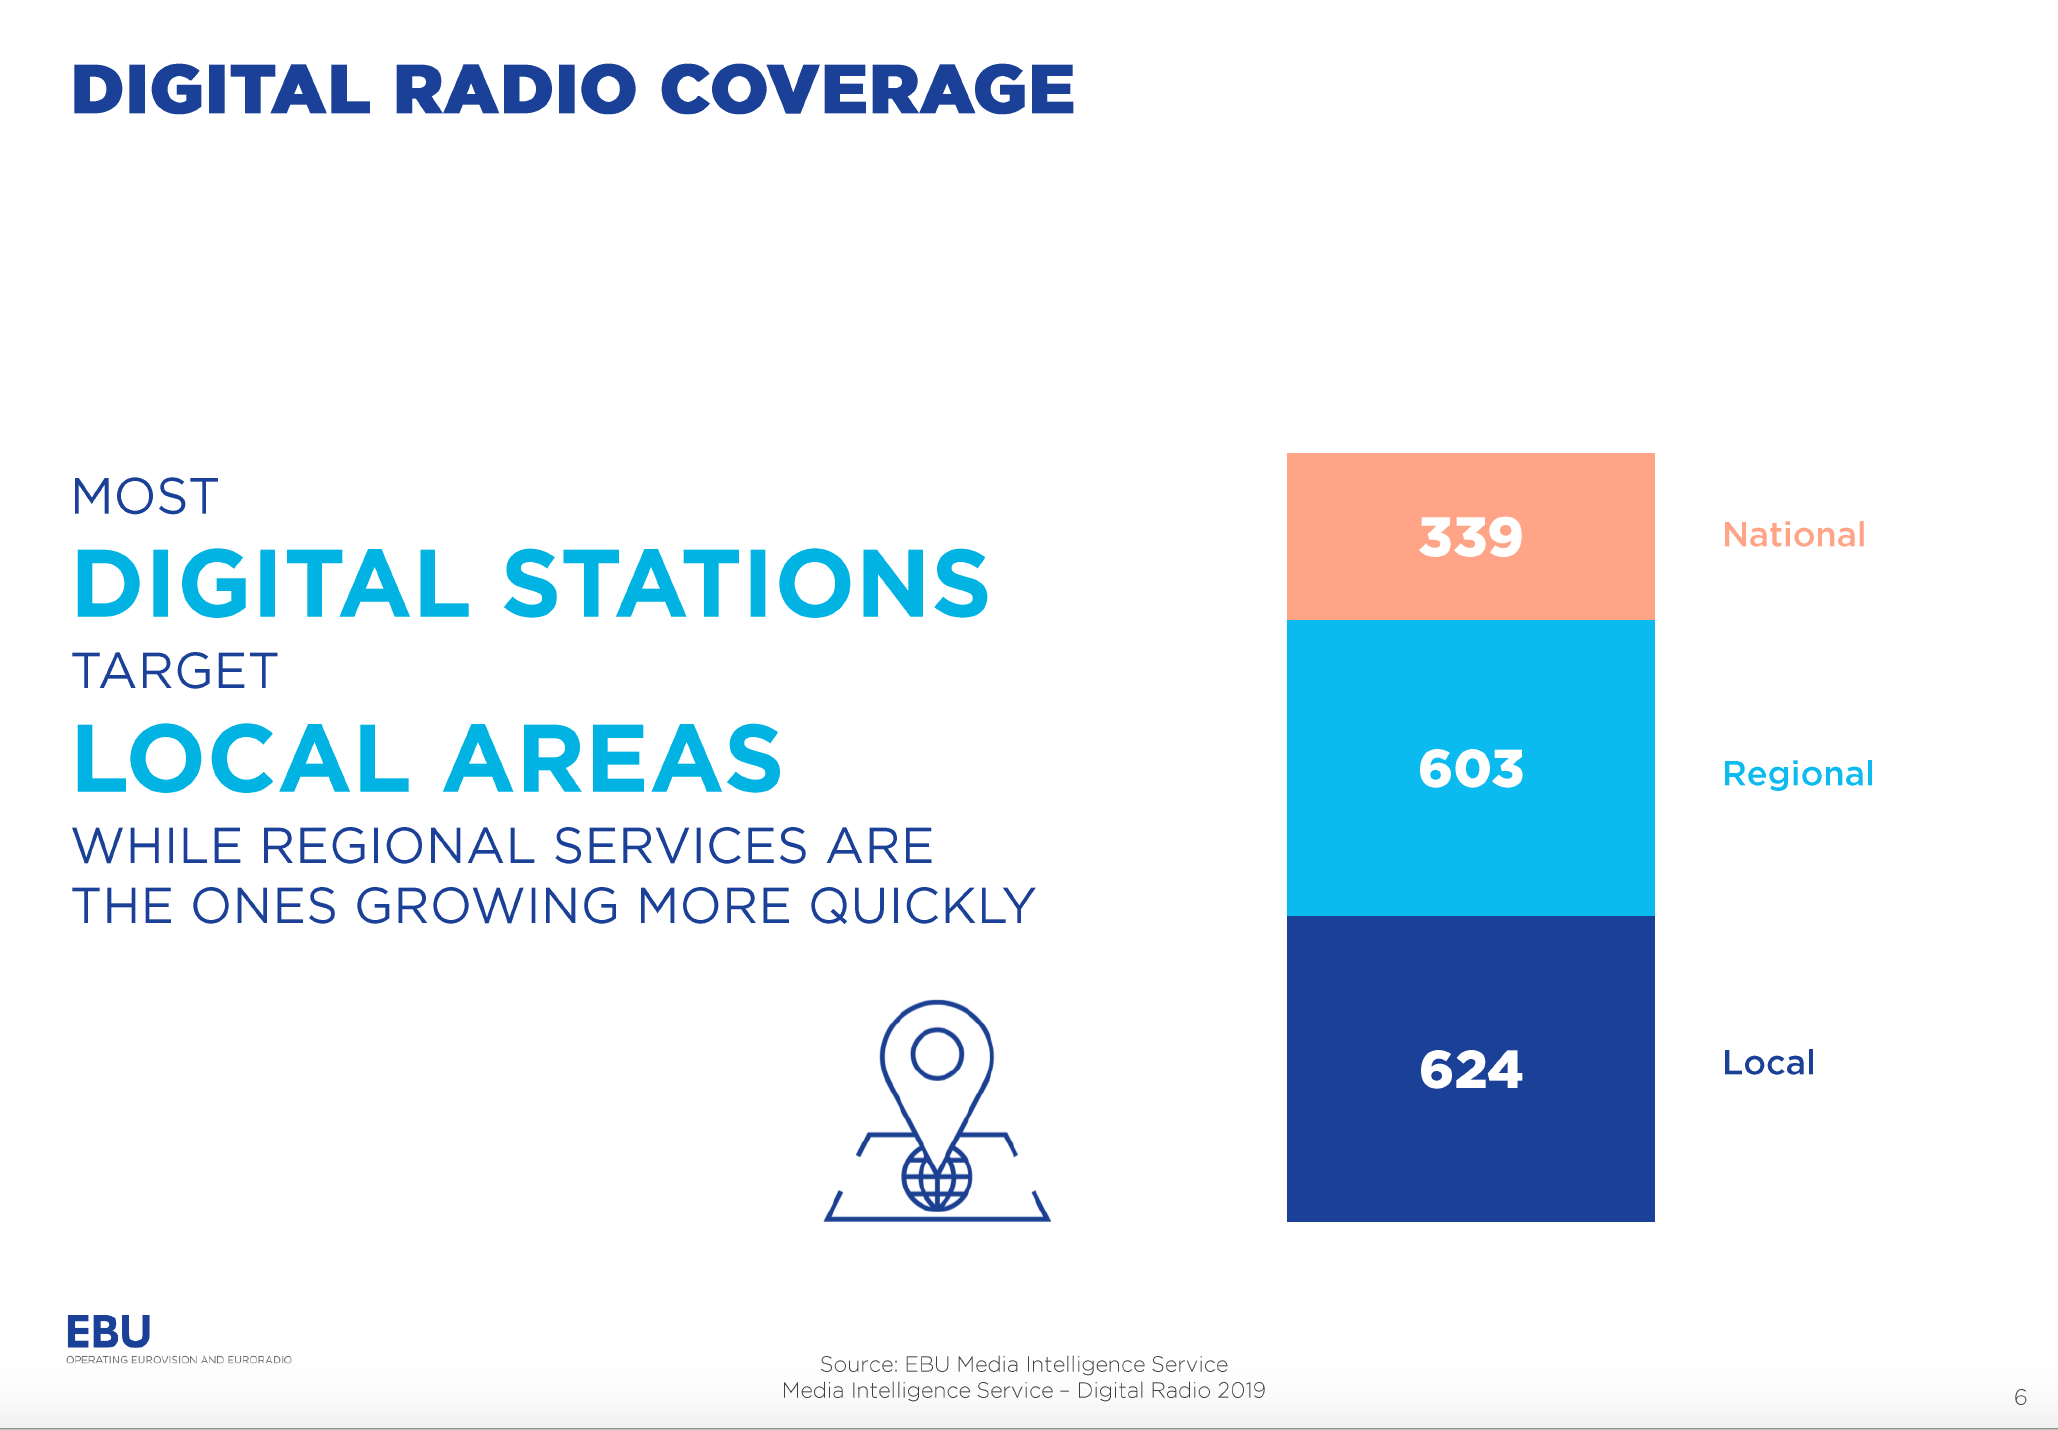 Début 2019, 1 566 radios émettent en DAB+ en Europe